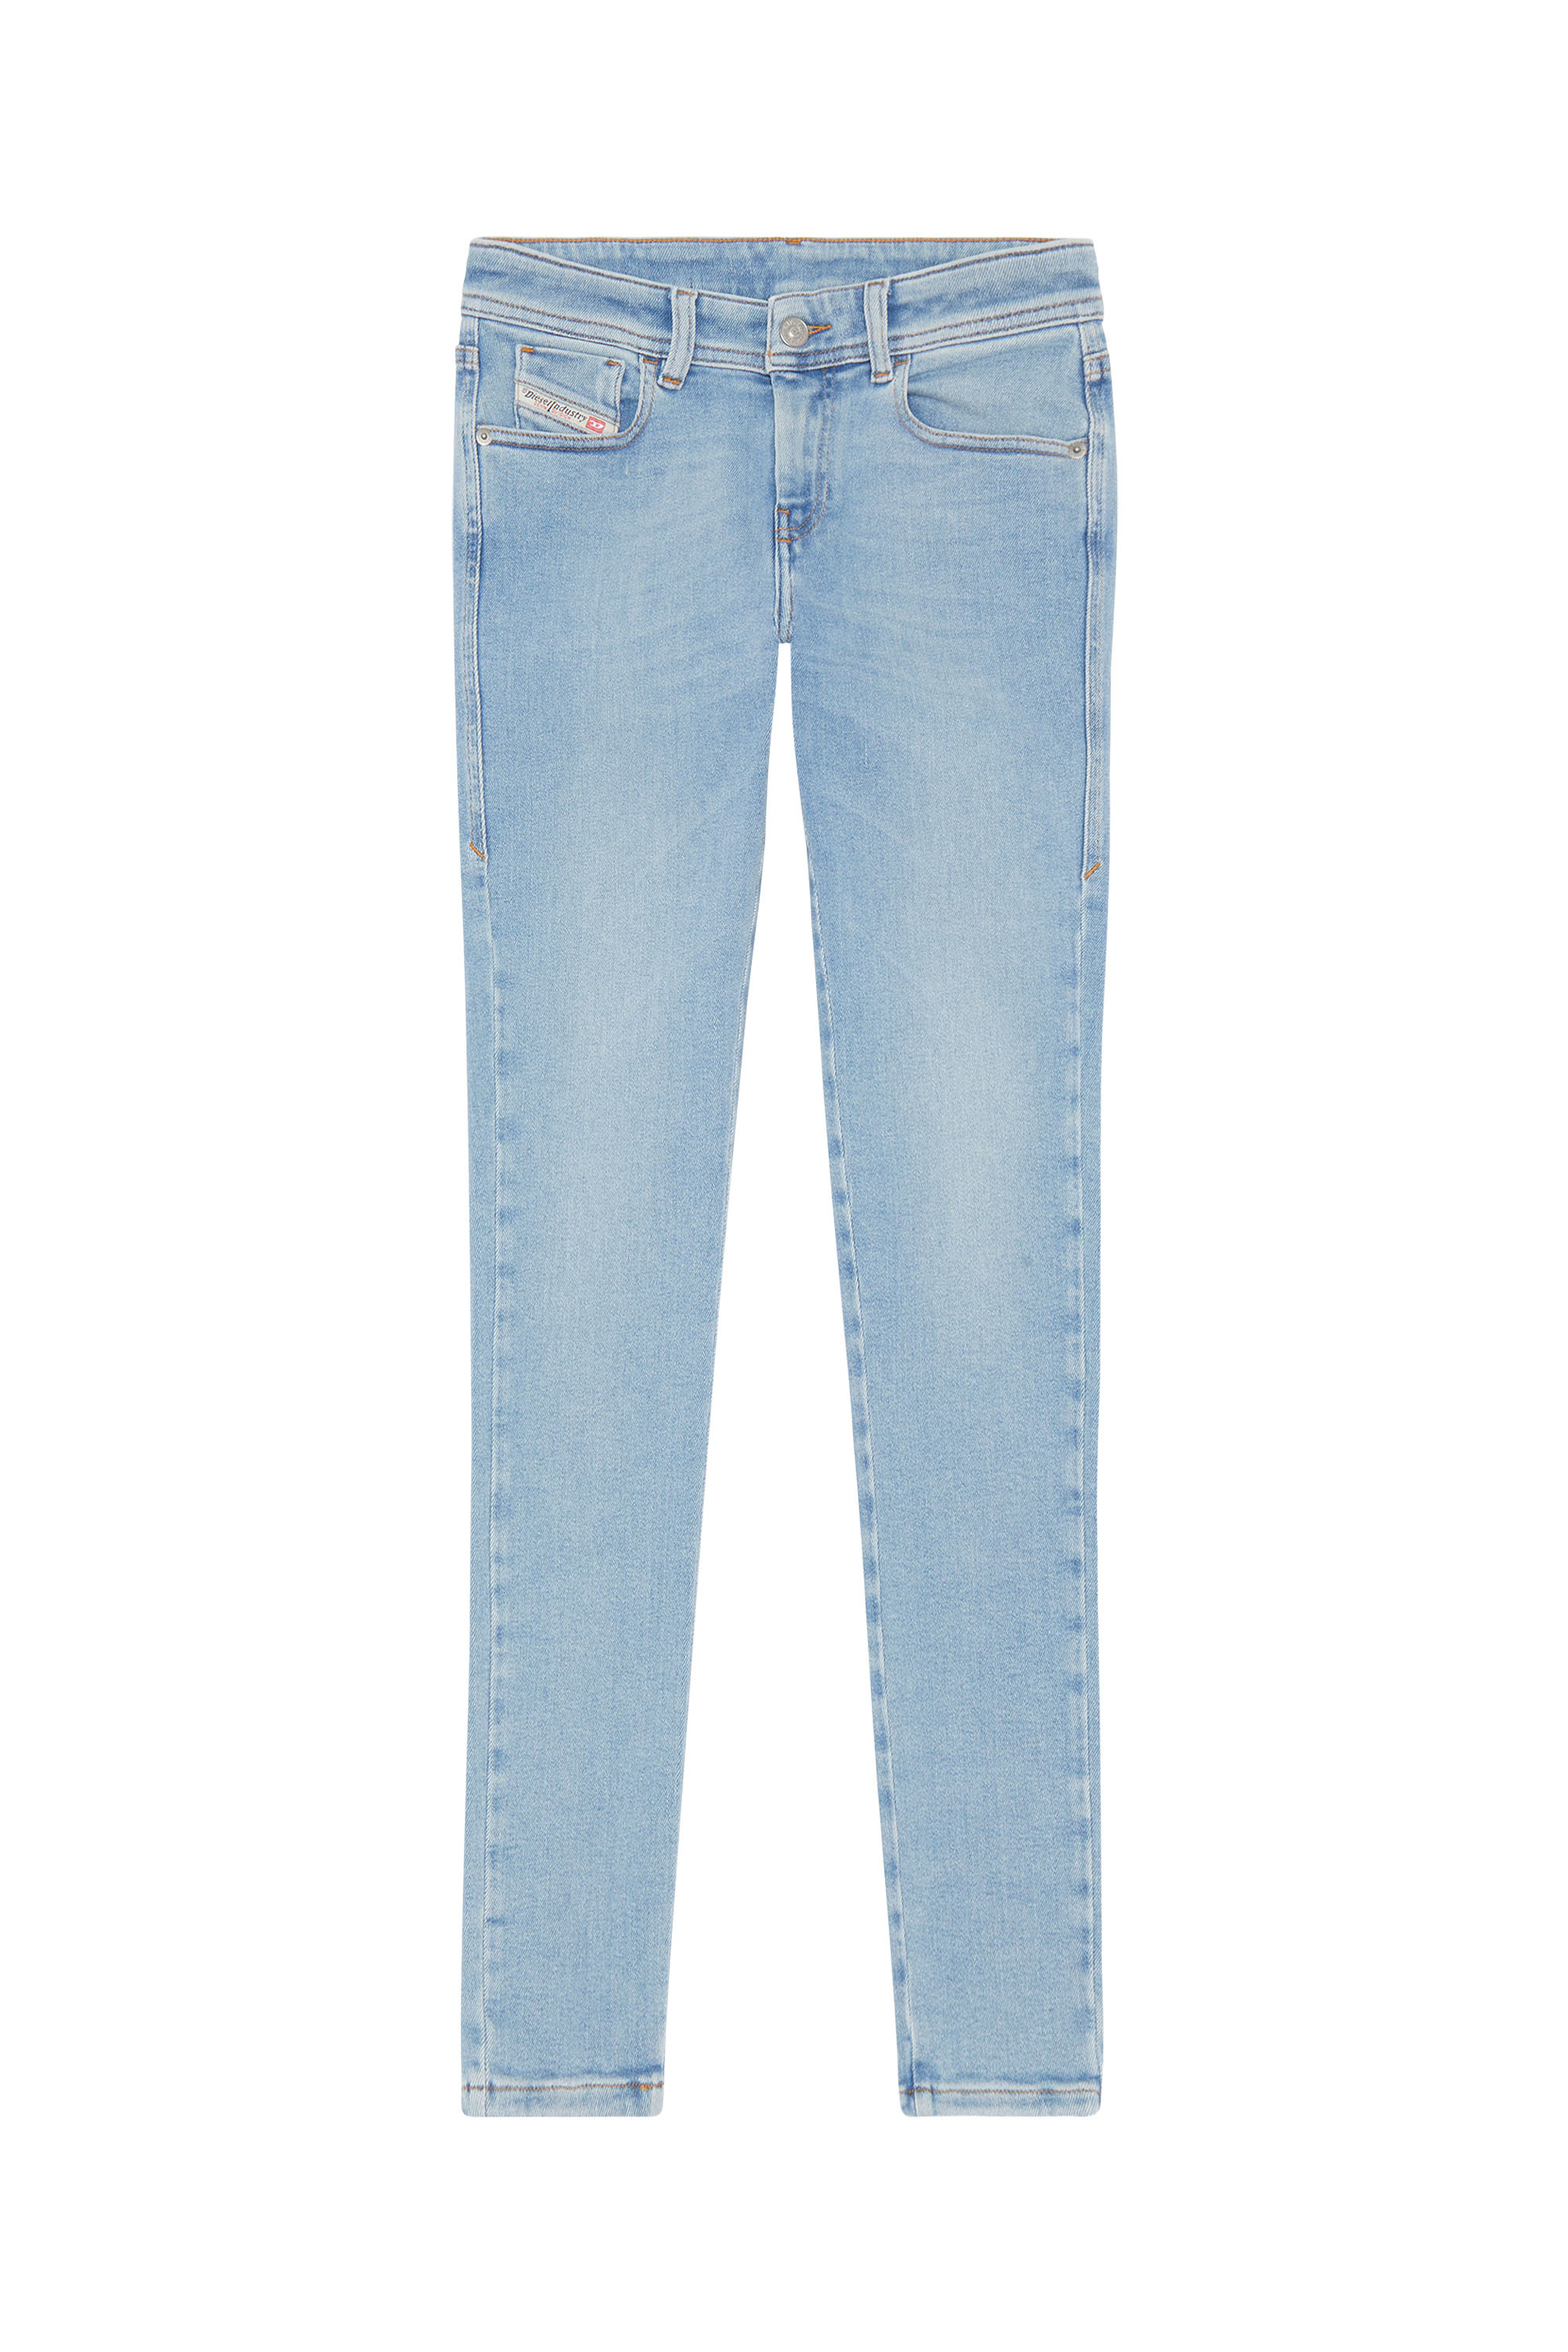 Diesel - Super skinny Jeans 2017 Slandy 09F87, Light Blue - Image 4